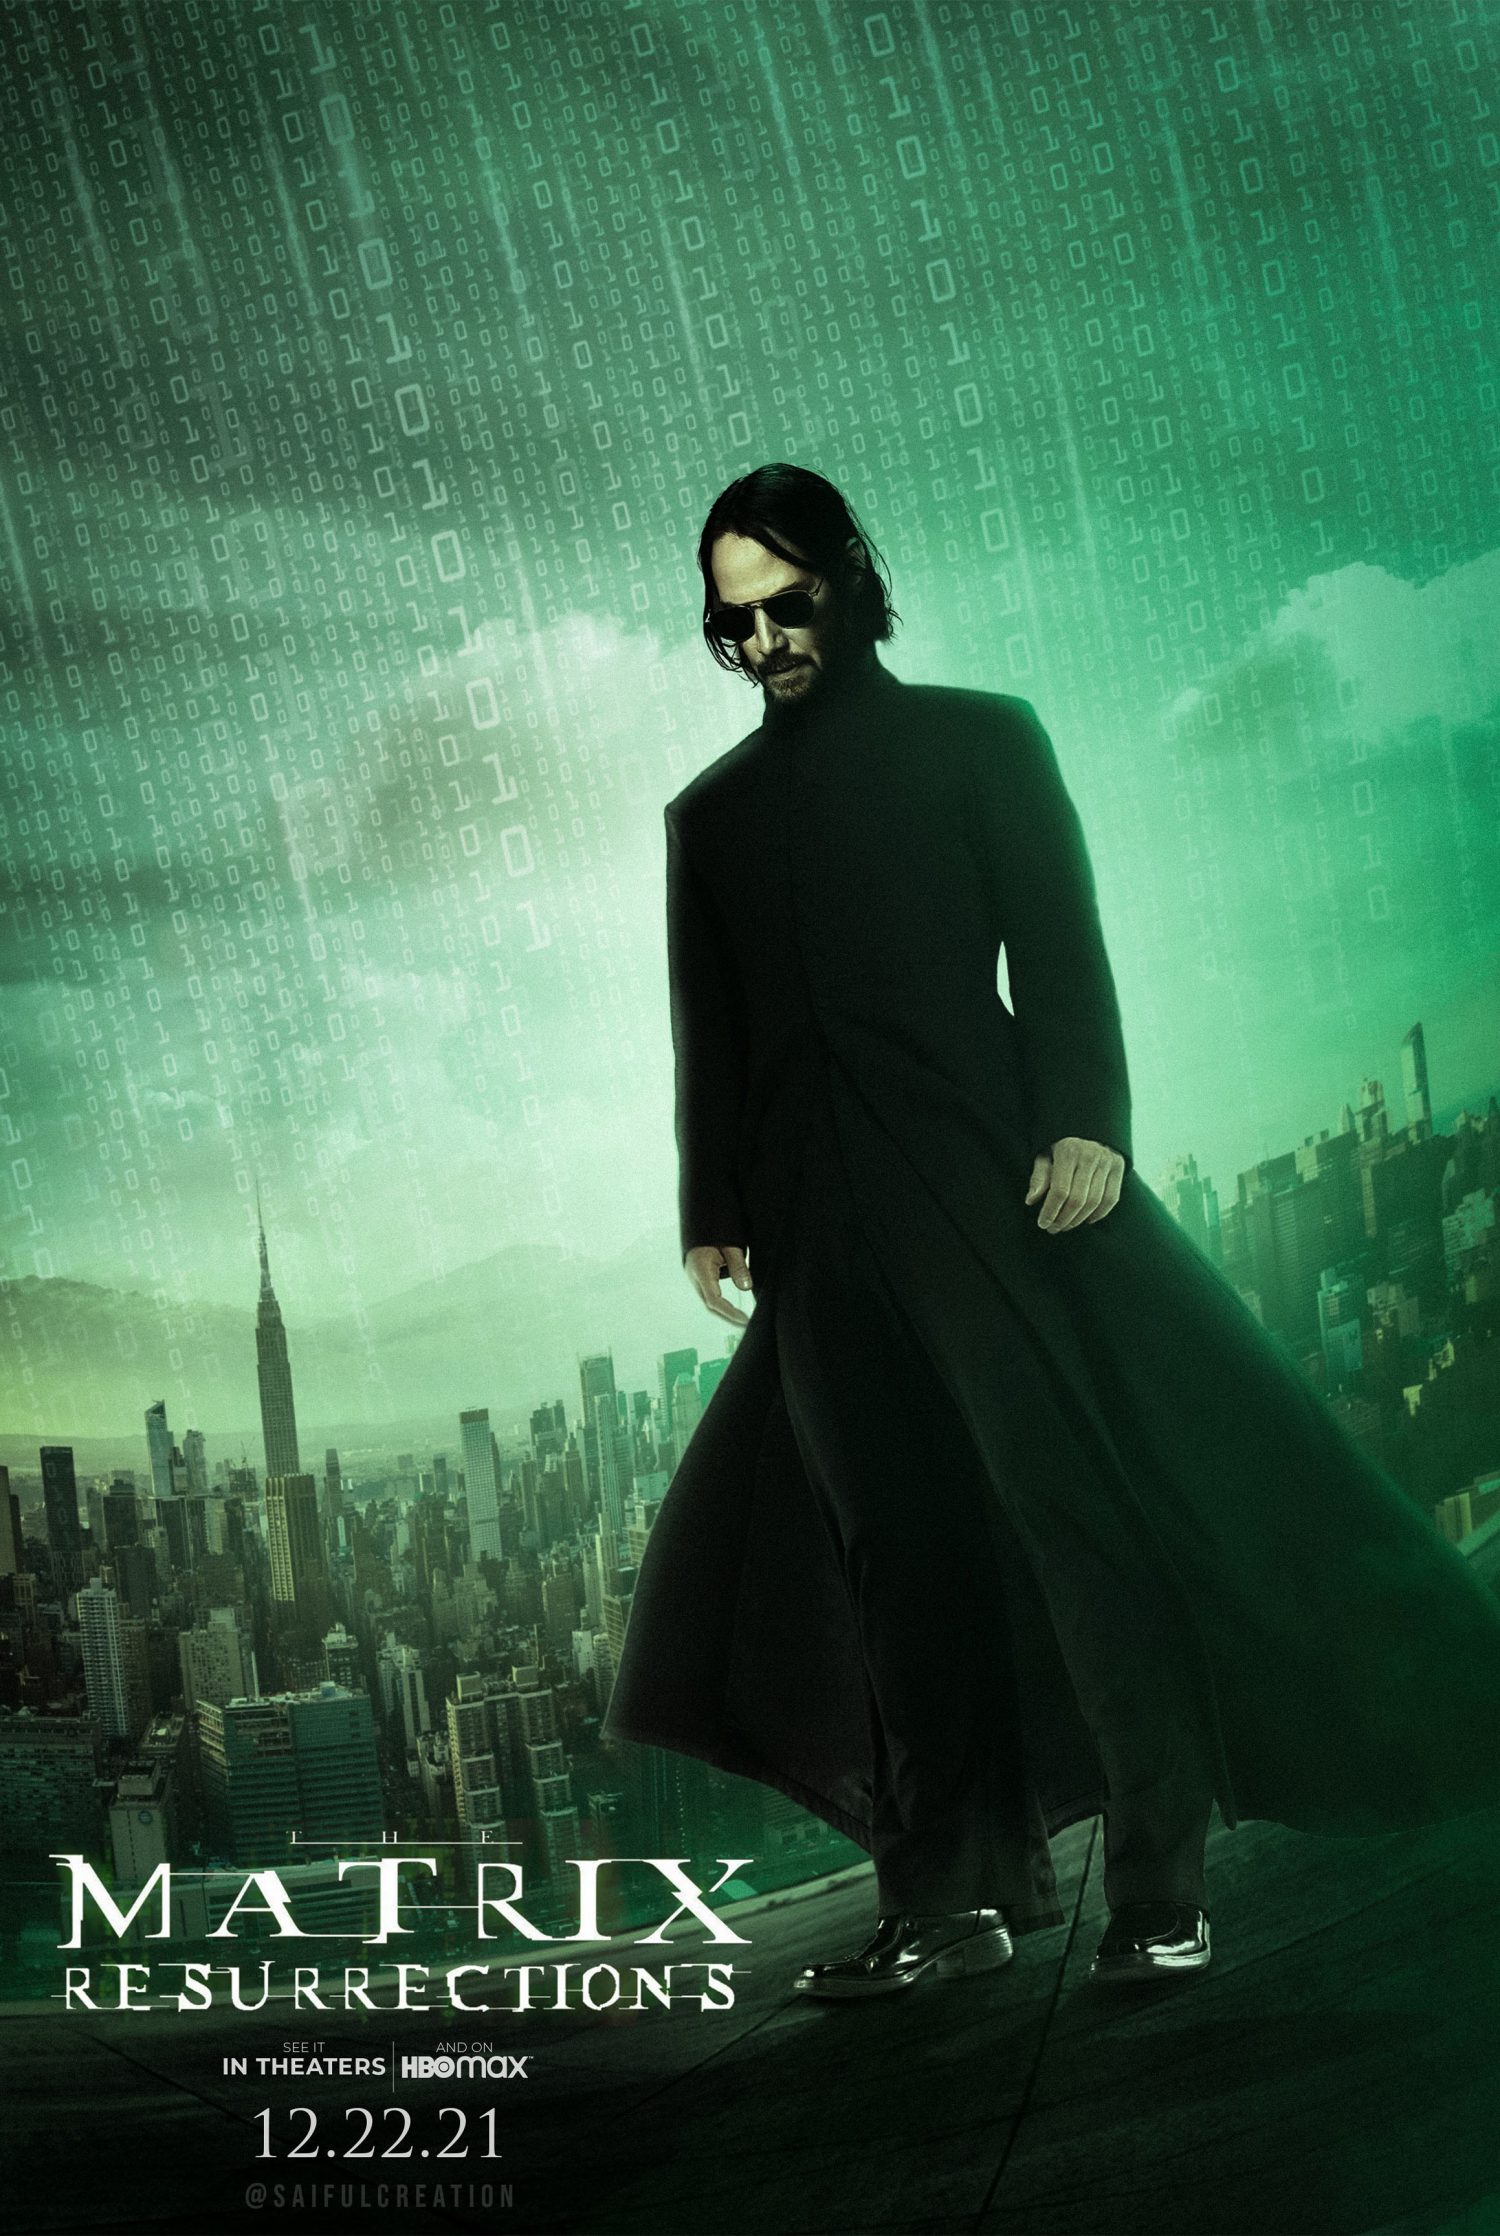 Matrix Resurrections coming soon to theatres and HBO Max (Dec. 22)